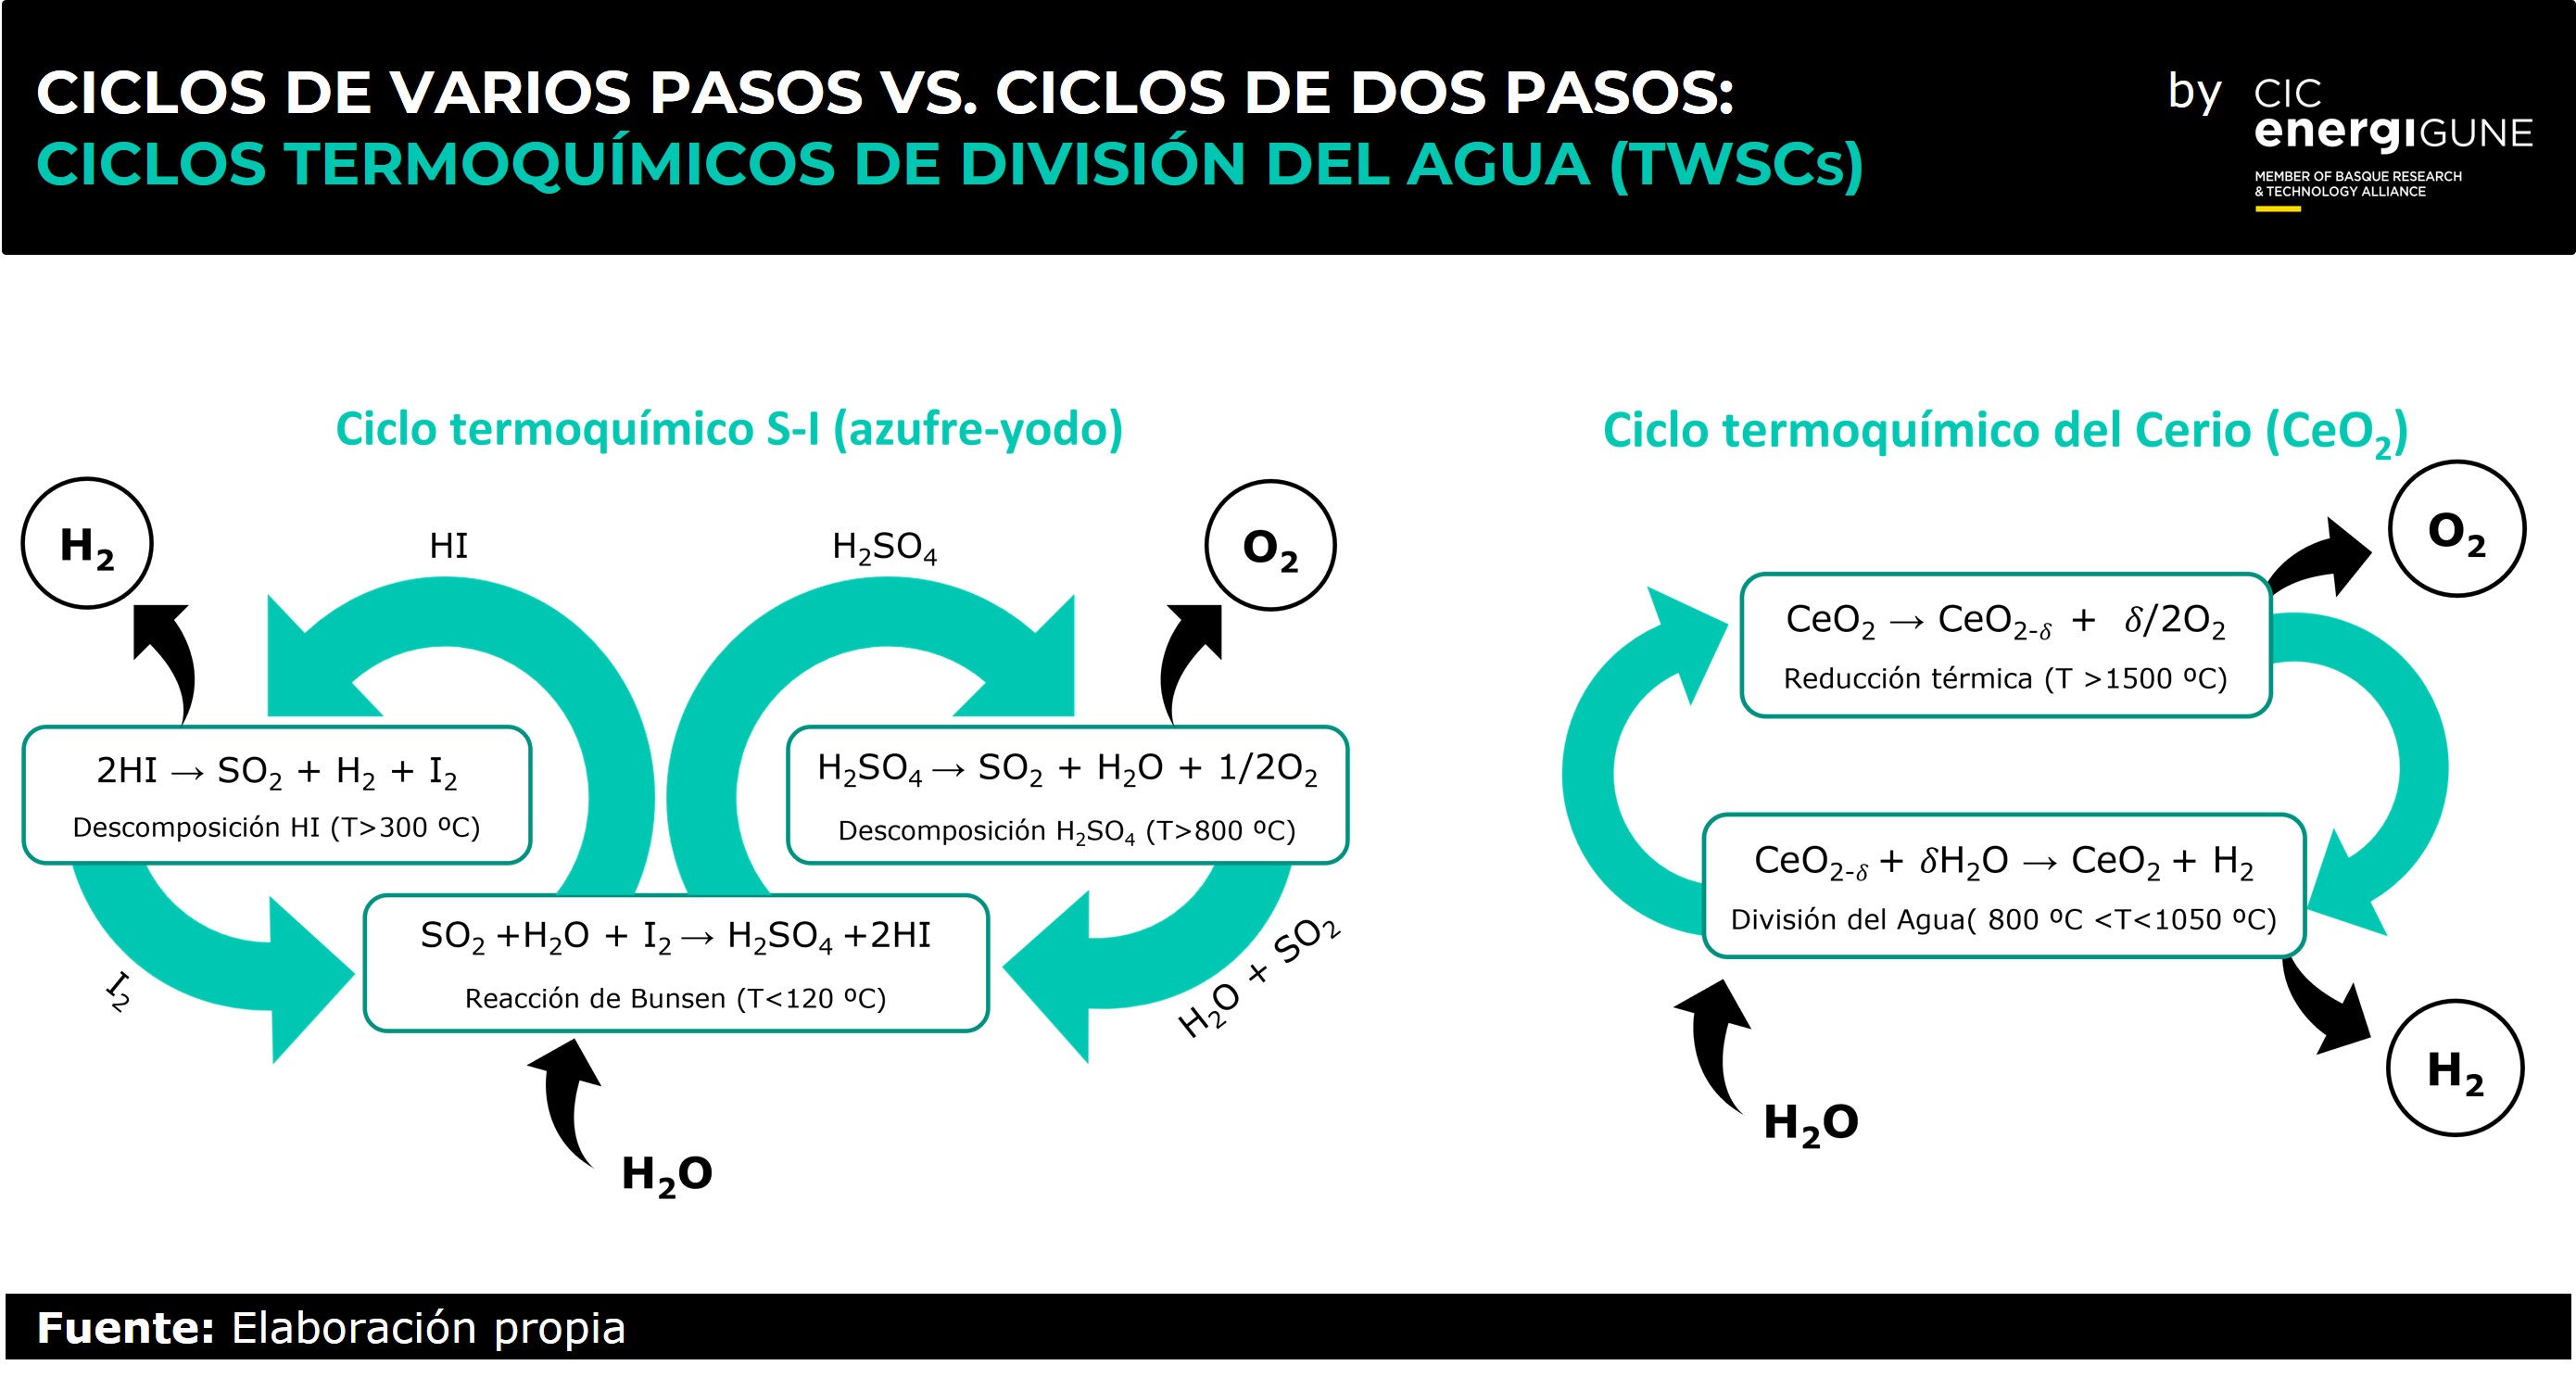 Ciclos de varios pasos vs ciclos de dos pasos: Ciclos termoquímicos de división del agua (TWSCs): Se muestra a través de diagramas con flechas la tangible diferencia entre la complejidad de los ciclos de varios pasos y la sencillez de los ciclos de dos pa